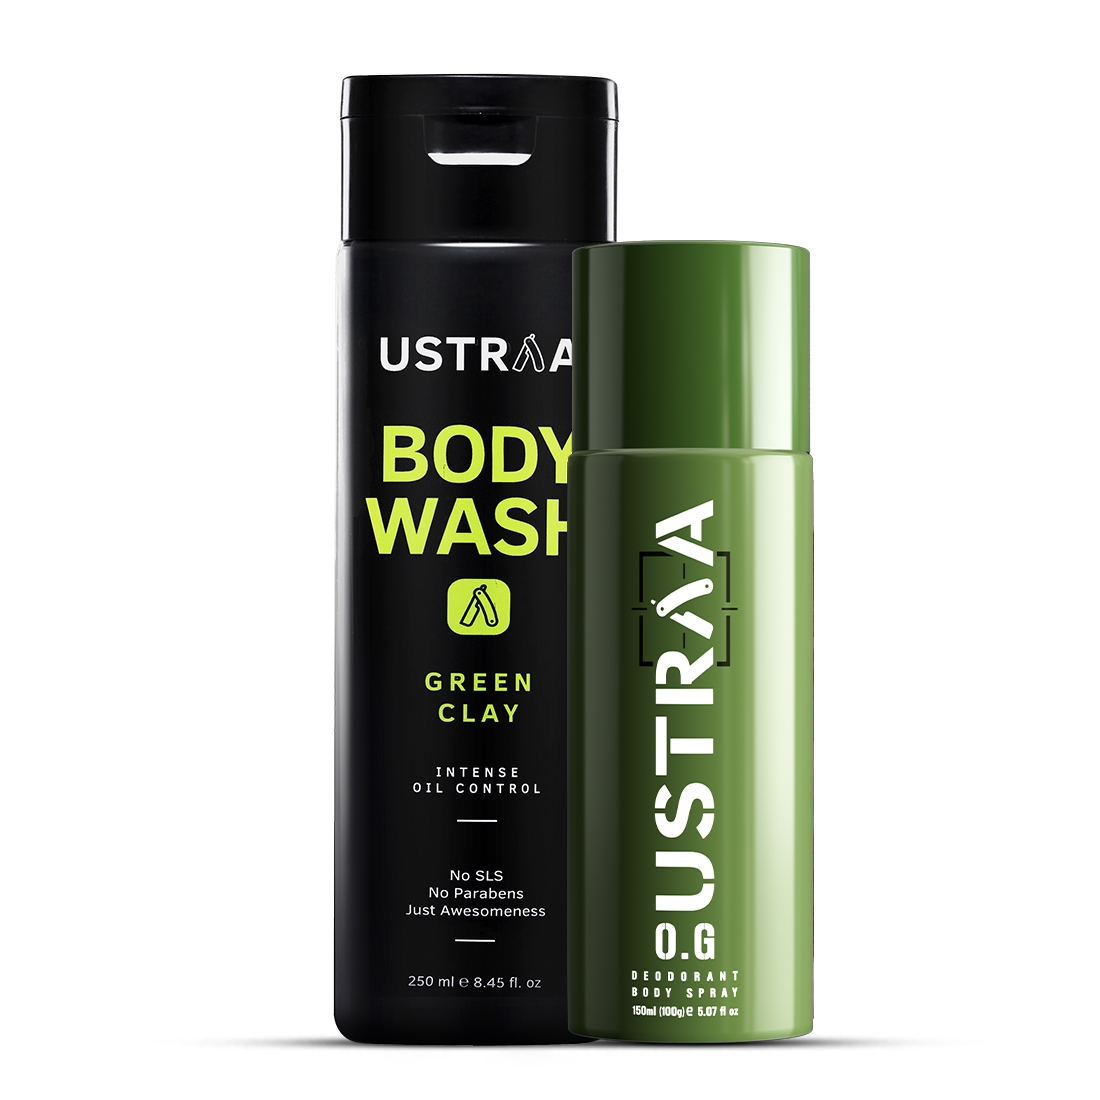 Ustraa O.G Deodorant - 150ml & Body Wash Green Clay - 250ml - Combo